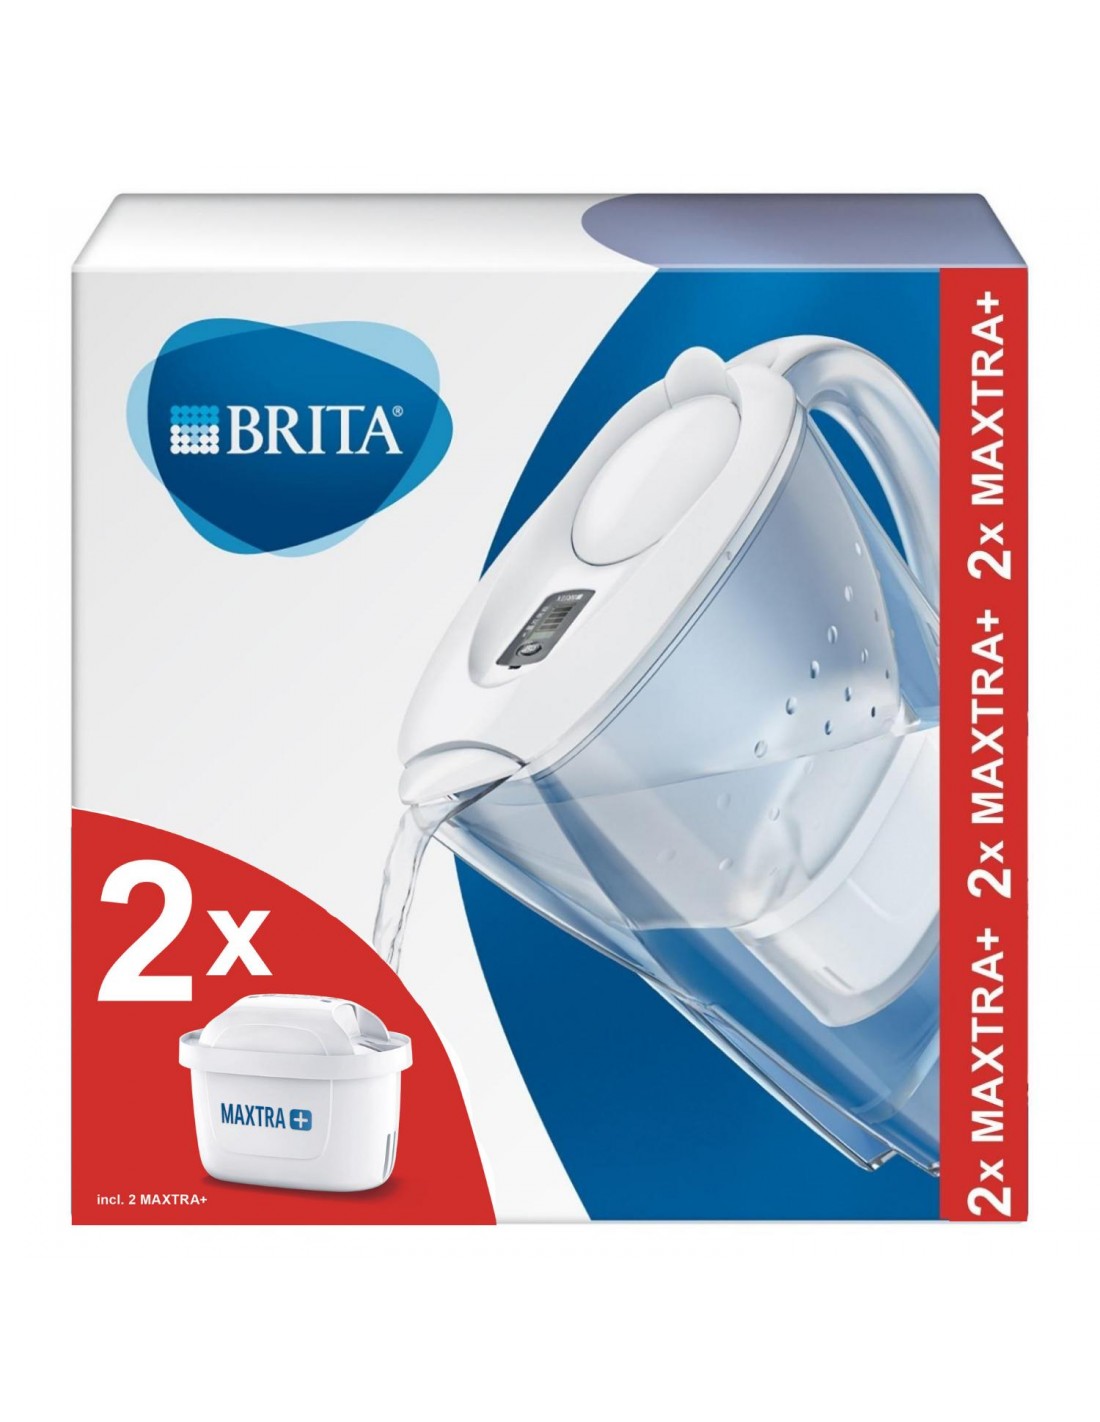 Pack Jarra de Agua con Filtro BRITA Marella 2,4L con 2 Filtros - Azul